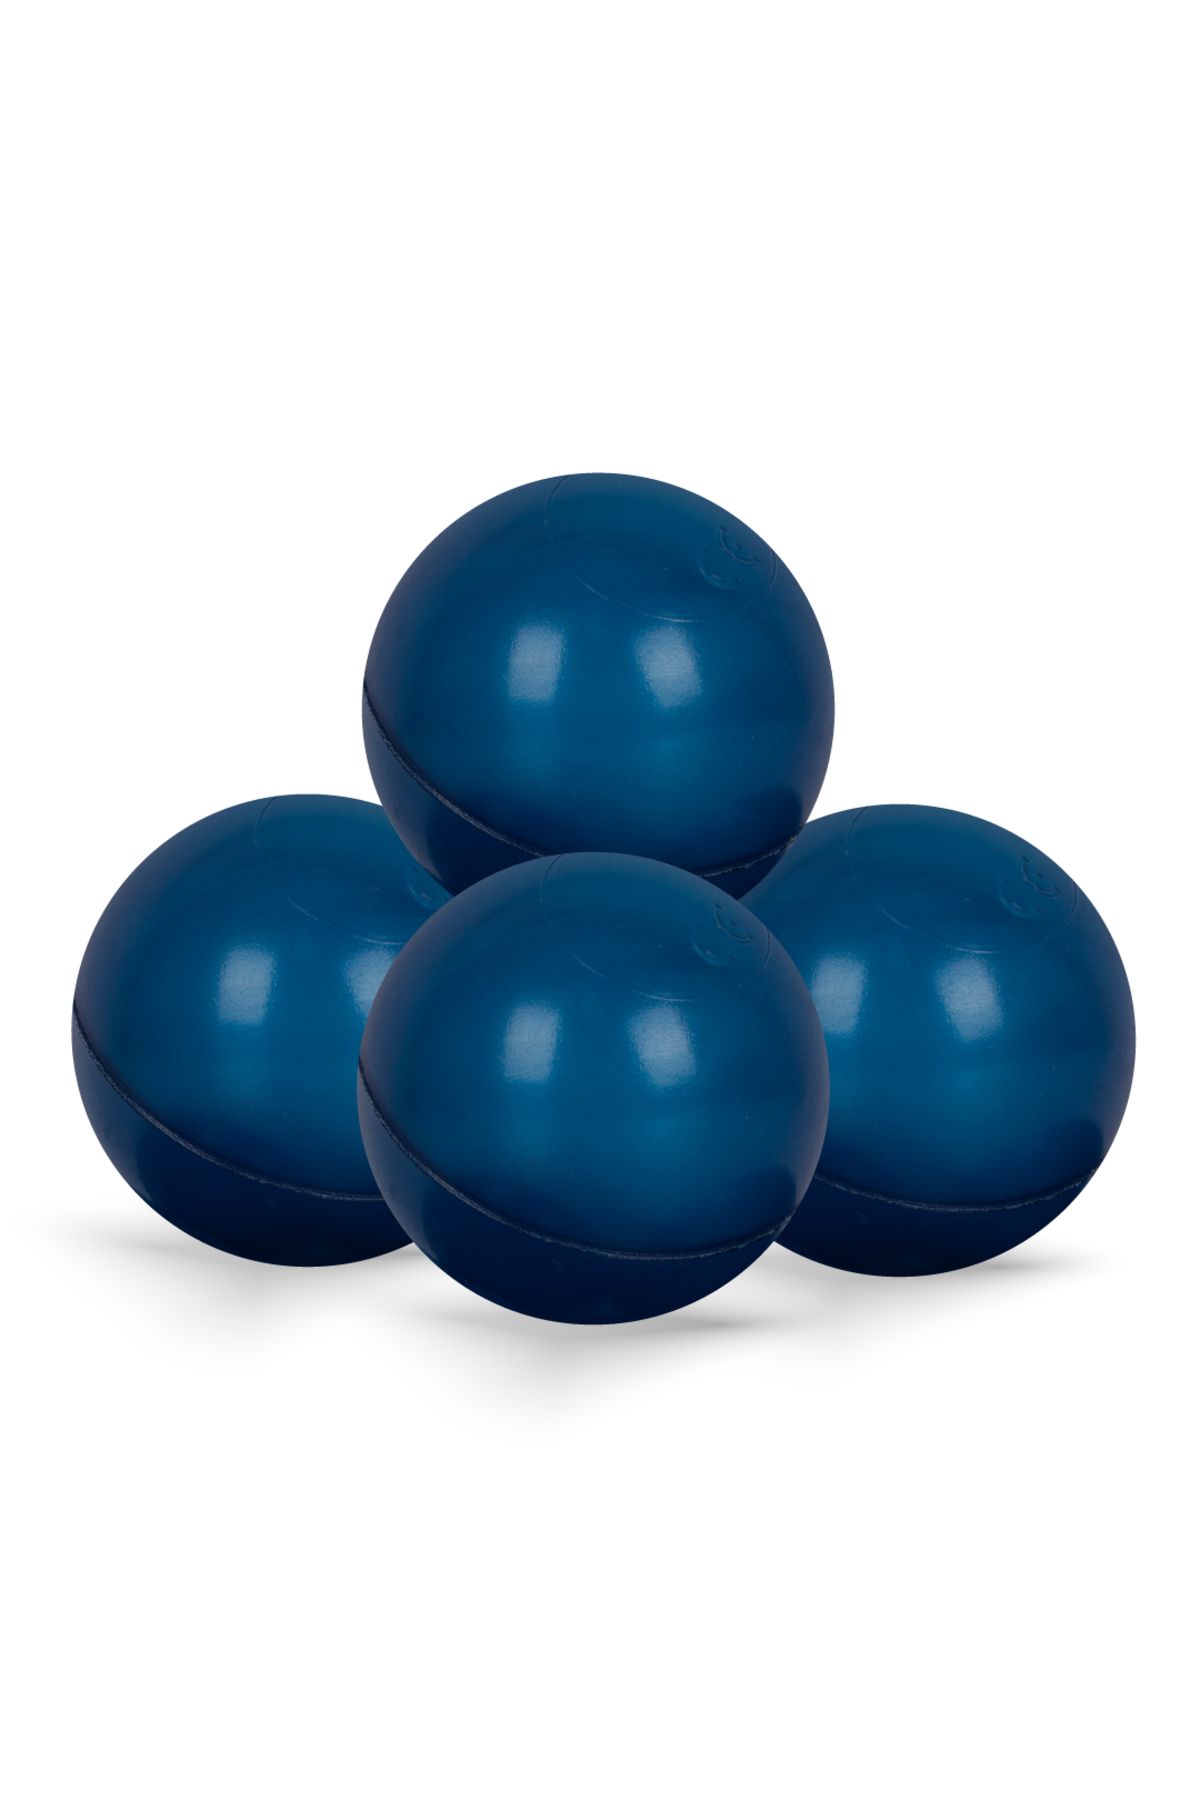 Afacanpark Koyu Mavi 7 cm 500 Adet - Oyun Topu - Havuz Topu - Çocuk Oyun Su Topu